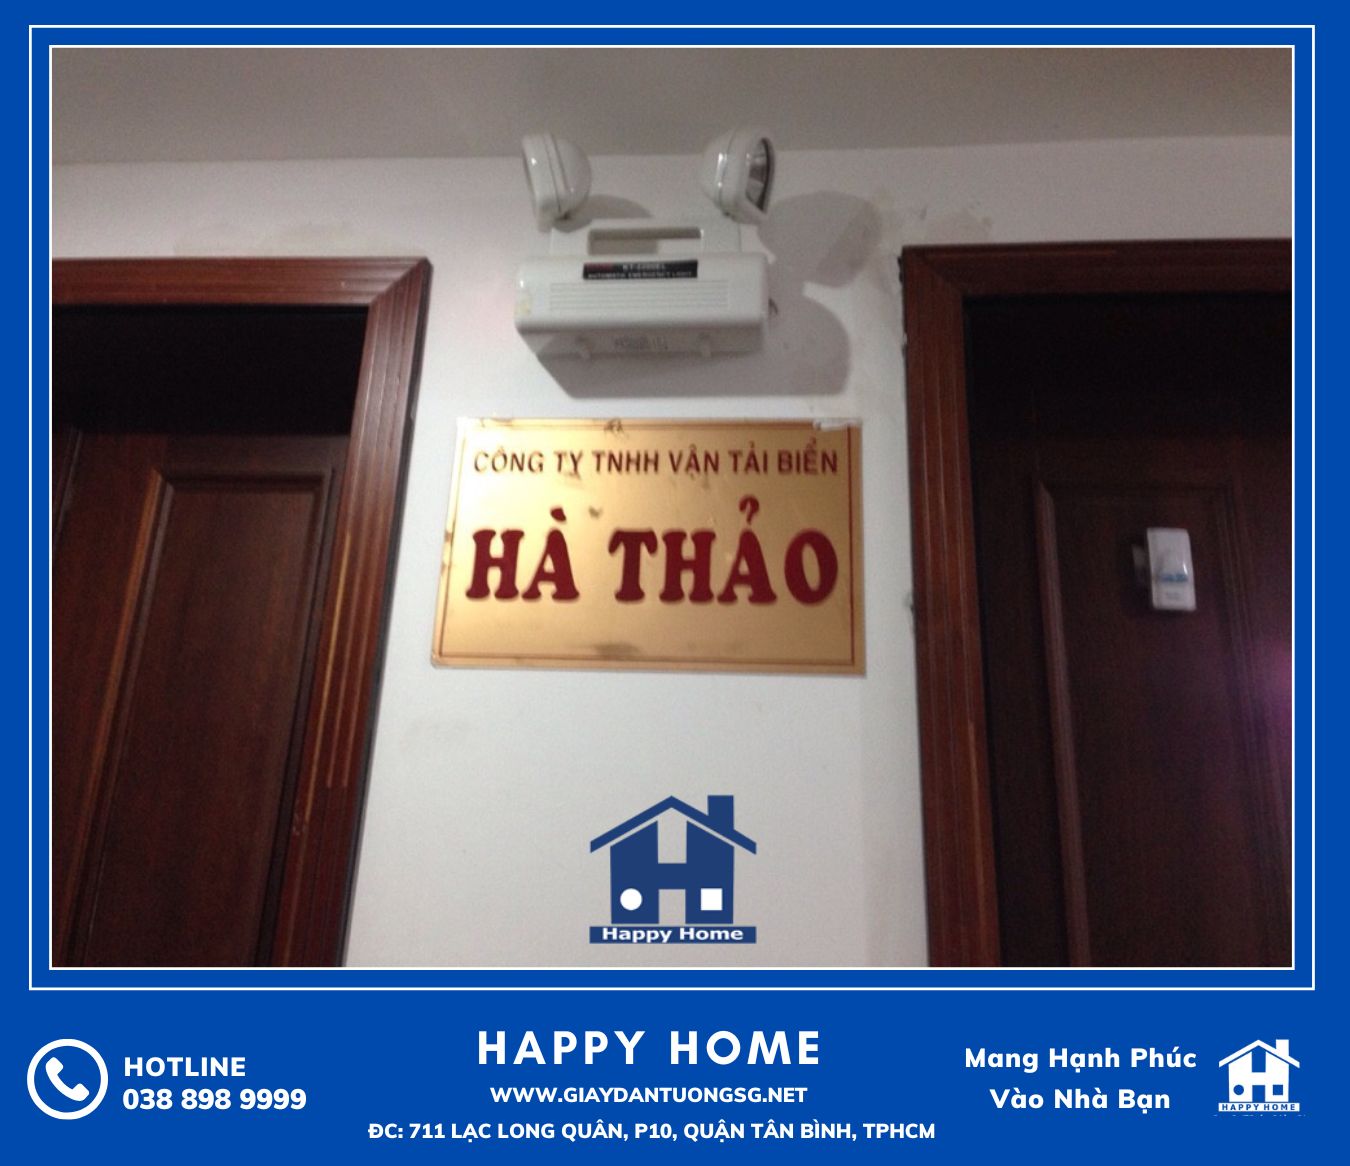 Happy Home thi công giấy và tranh dán tường tại văn phòng công ty Hà Thảo